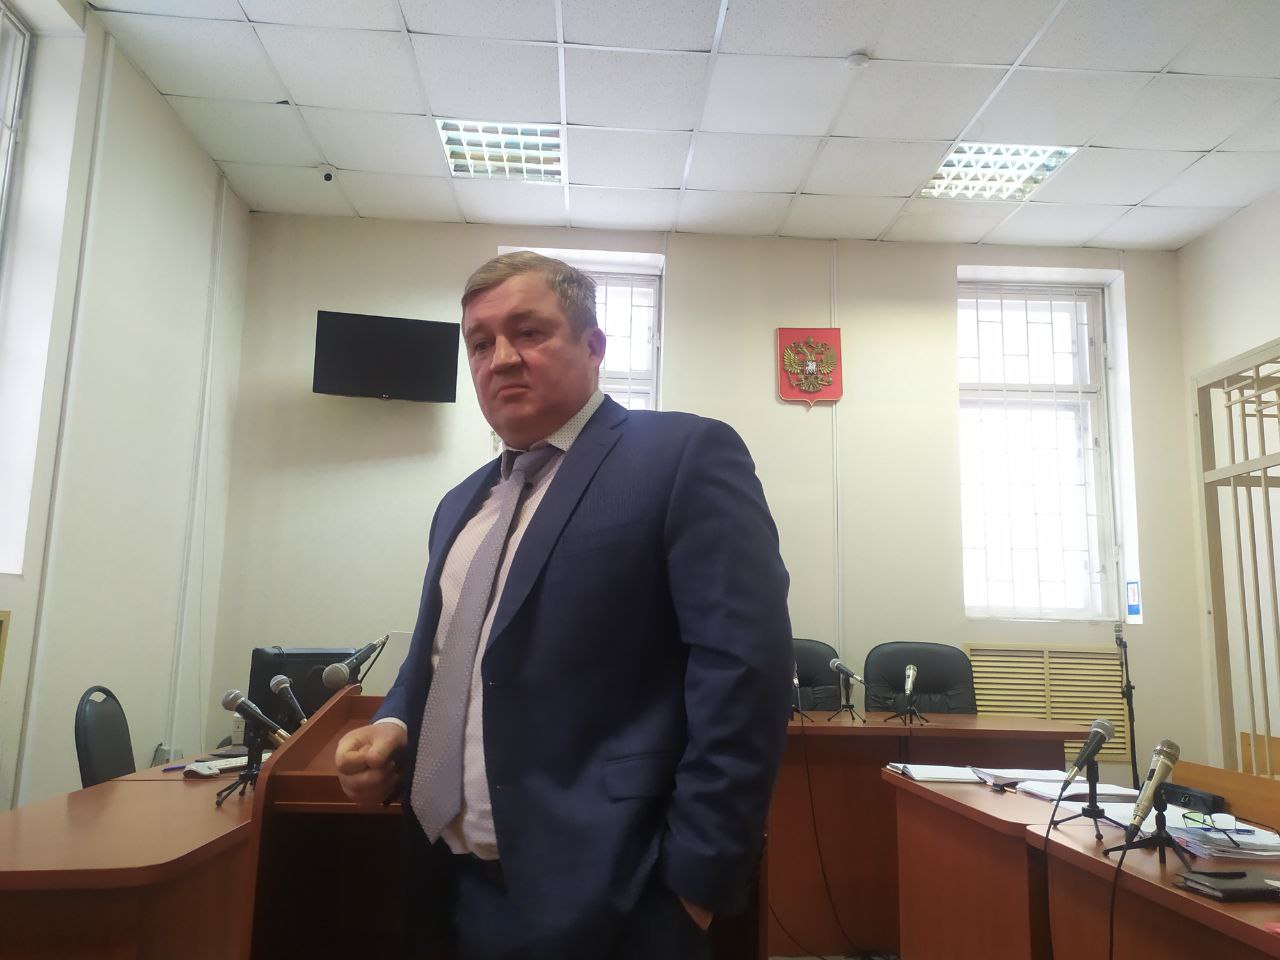 Флешбэки о каруселях посетили депутата Сан Саныча Чистякова на заседании по делу об афере на воронежских выборах